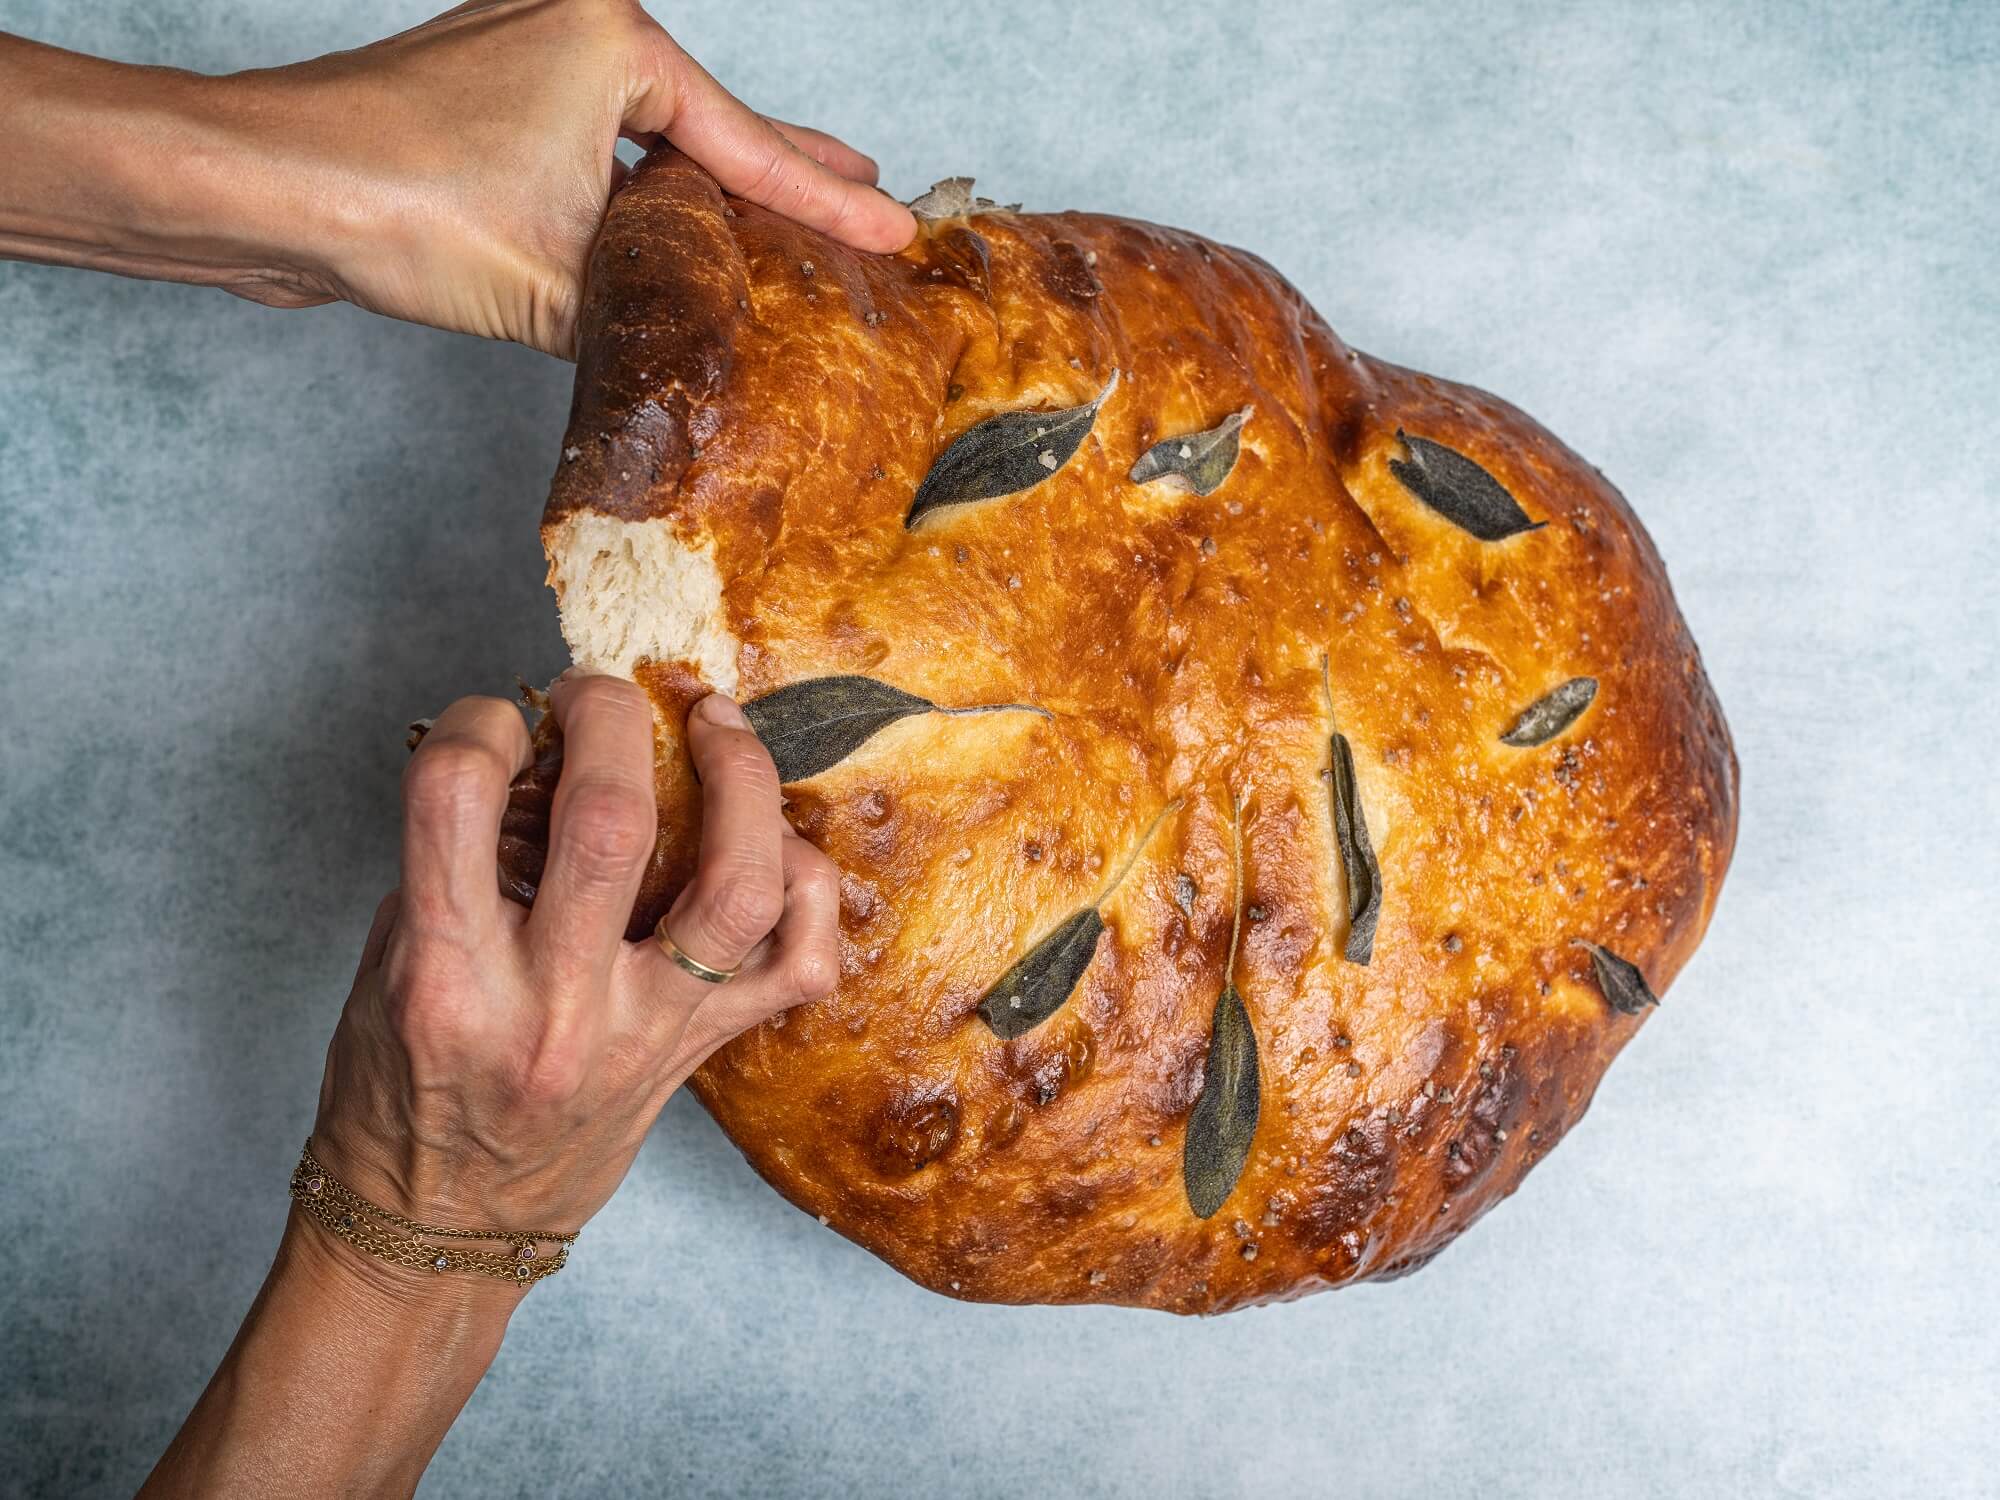 תמונה של ידיים בוצעות לחם עגול ושטוח